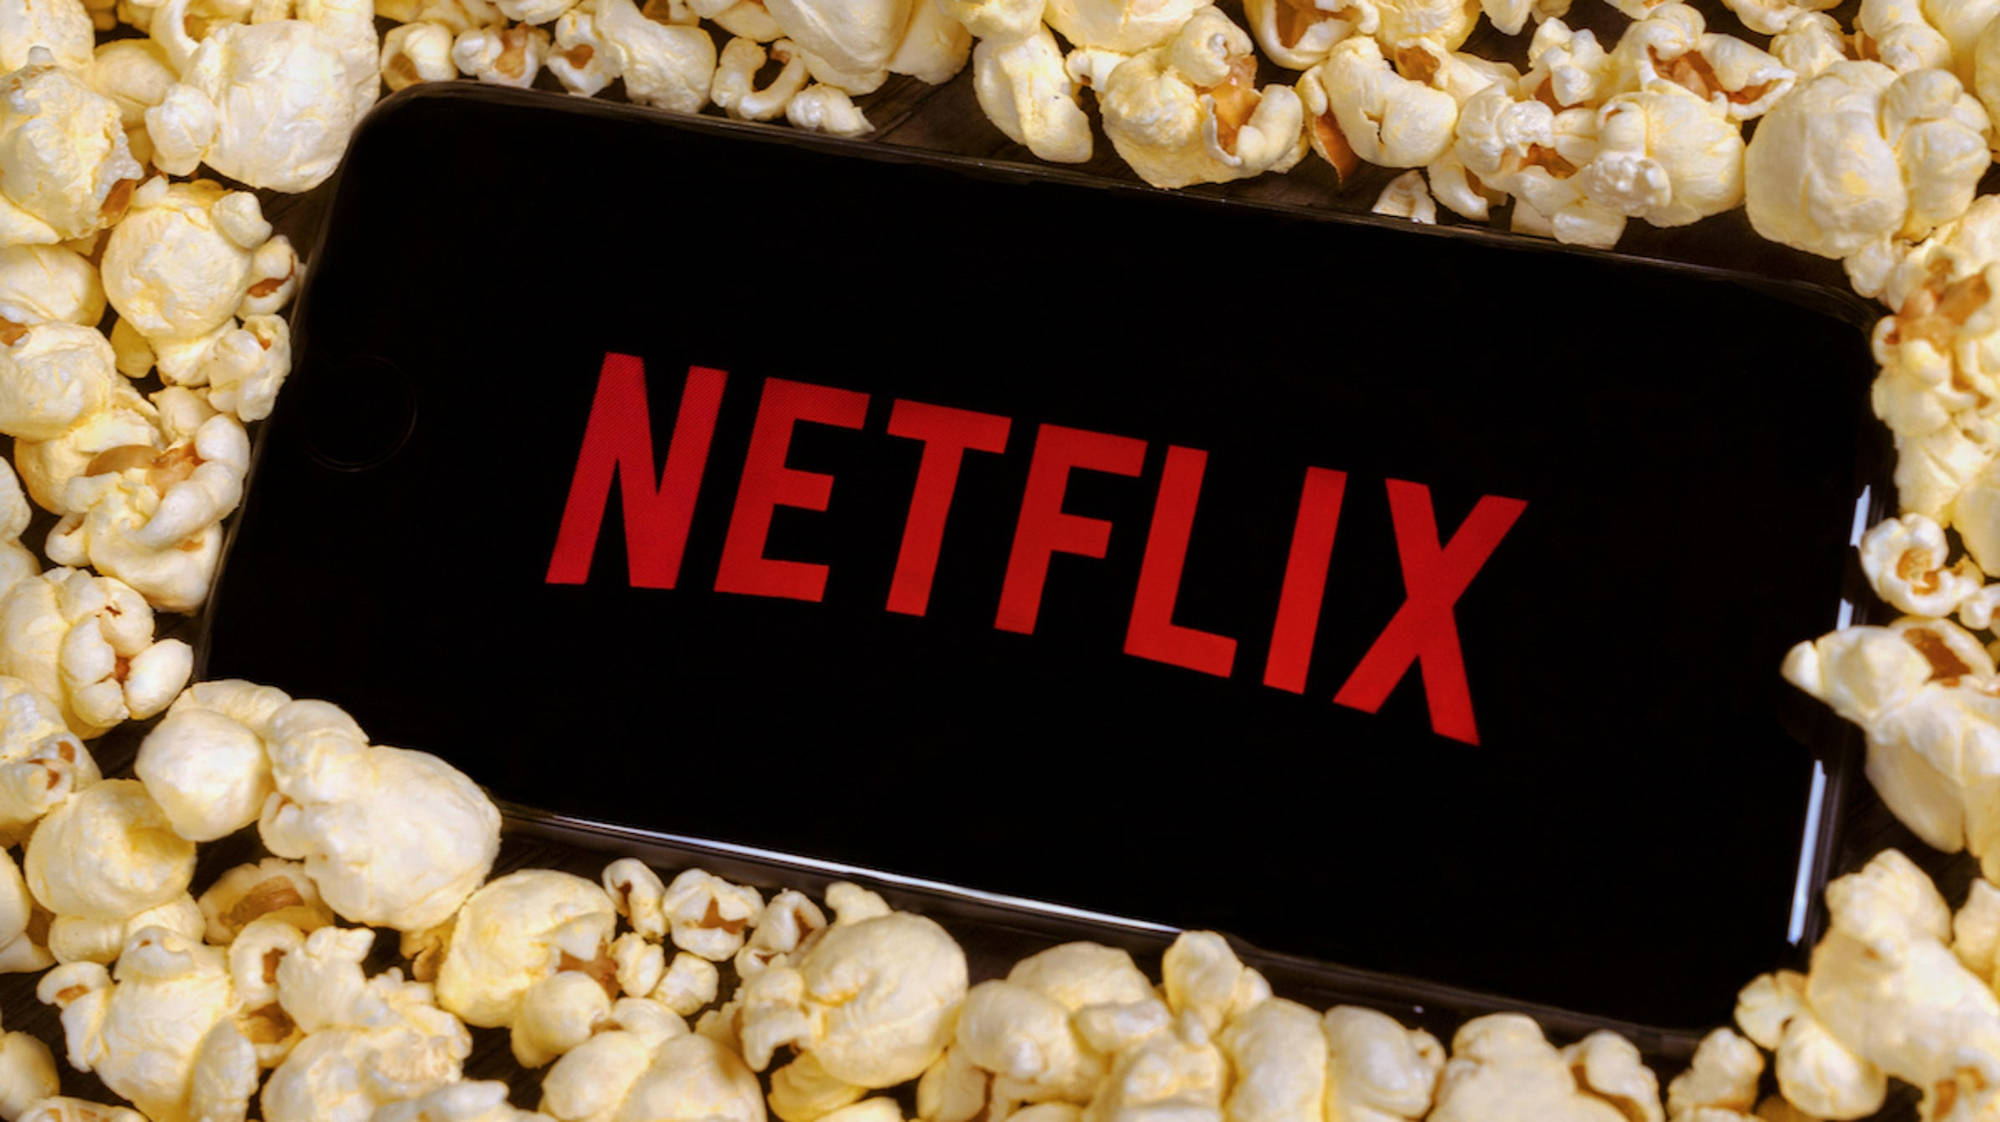 Download Netflix Aesthetic Popcorn Wallpaper